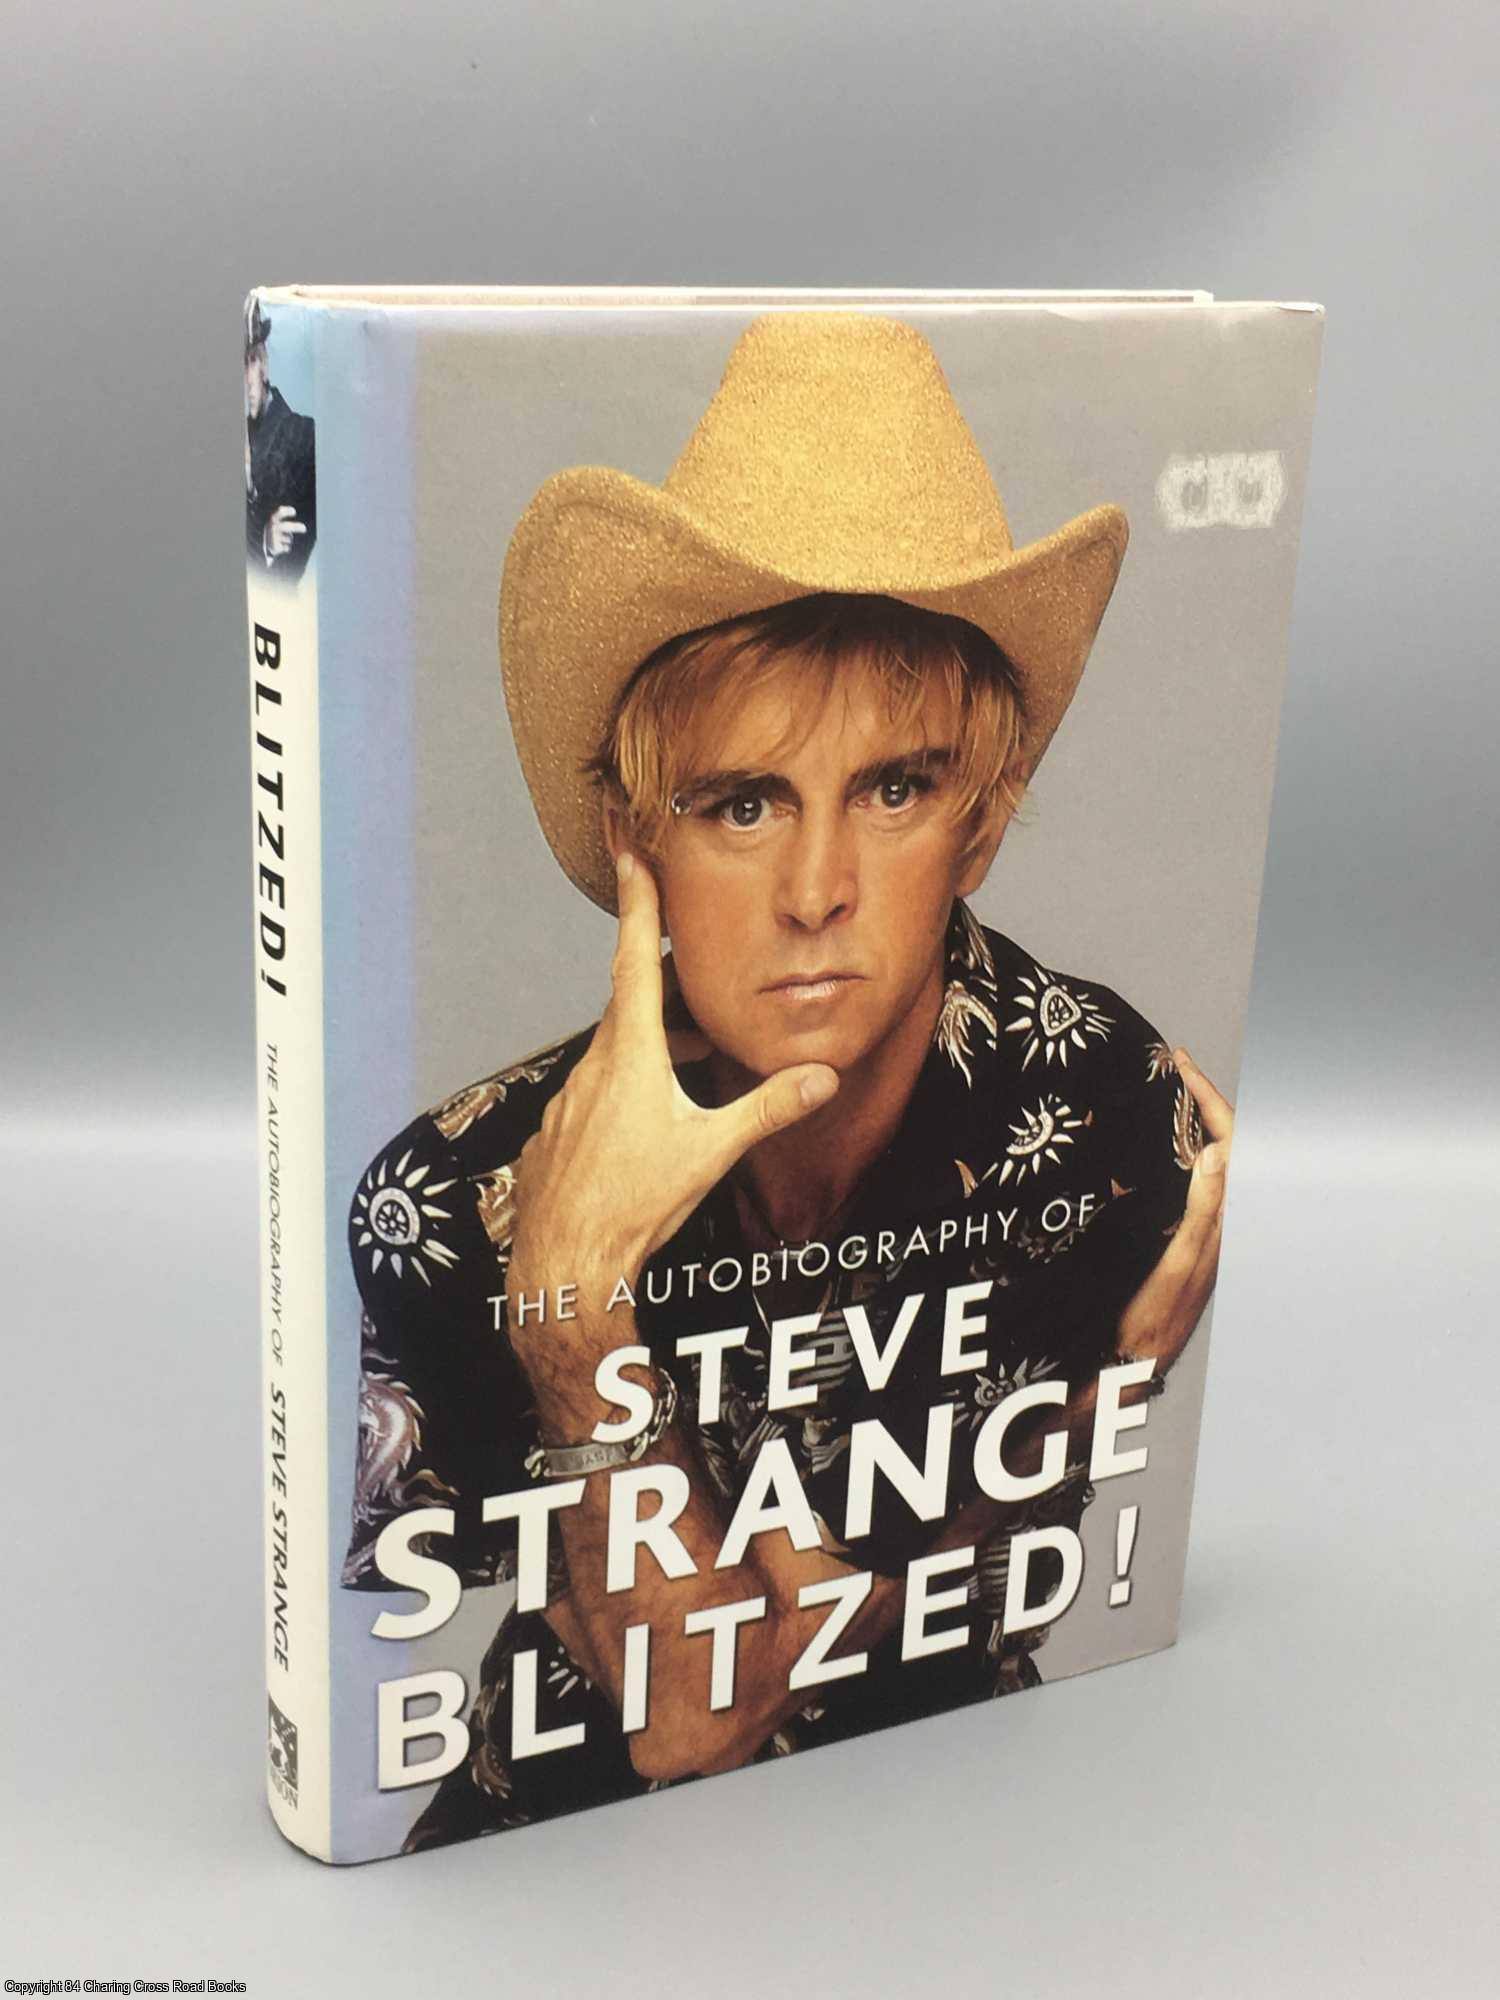 Strange, Steve - Blitzed!: The Autobiography of Steve Strange